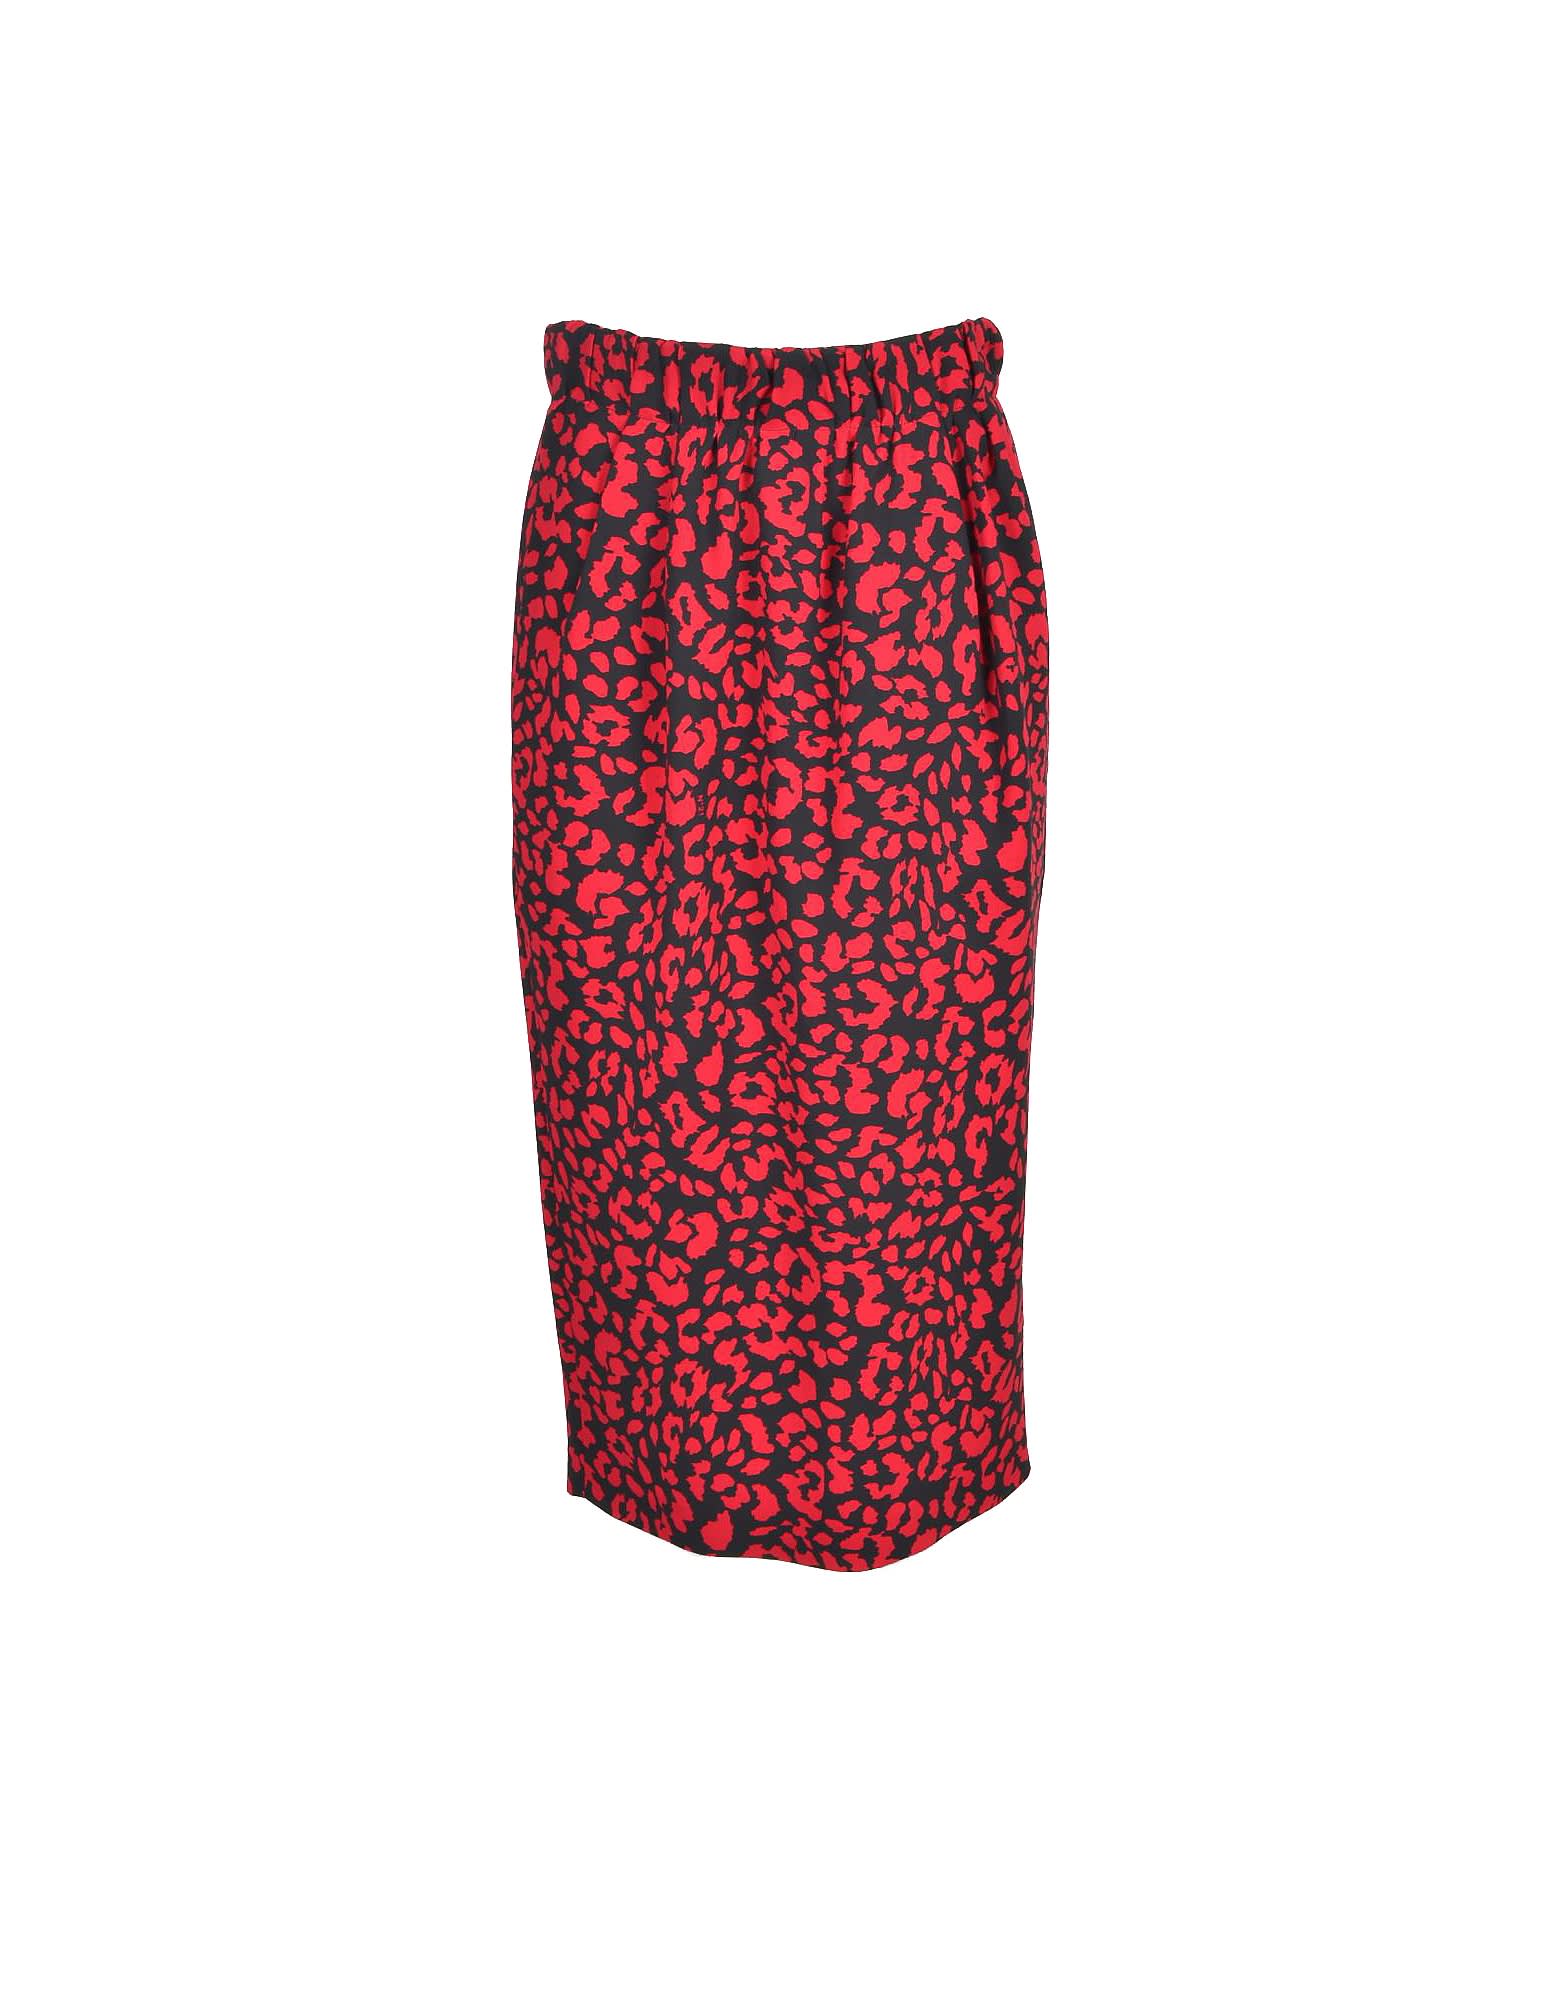 N.21 N°21 Womens Black Red Skirt